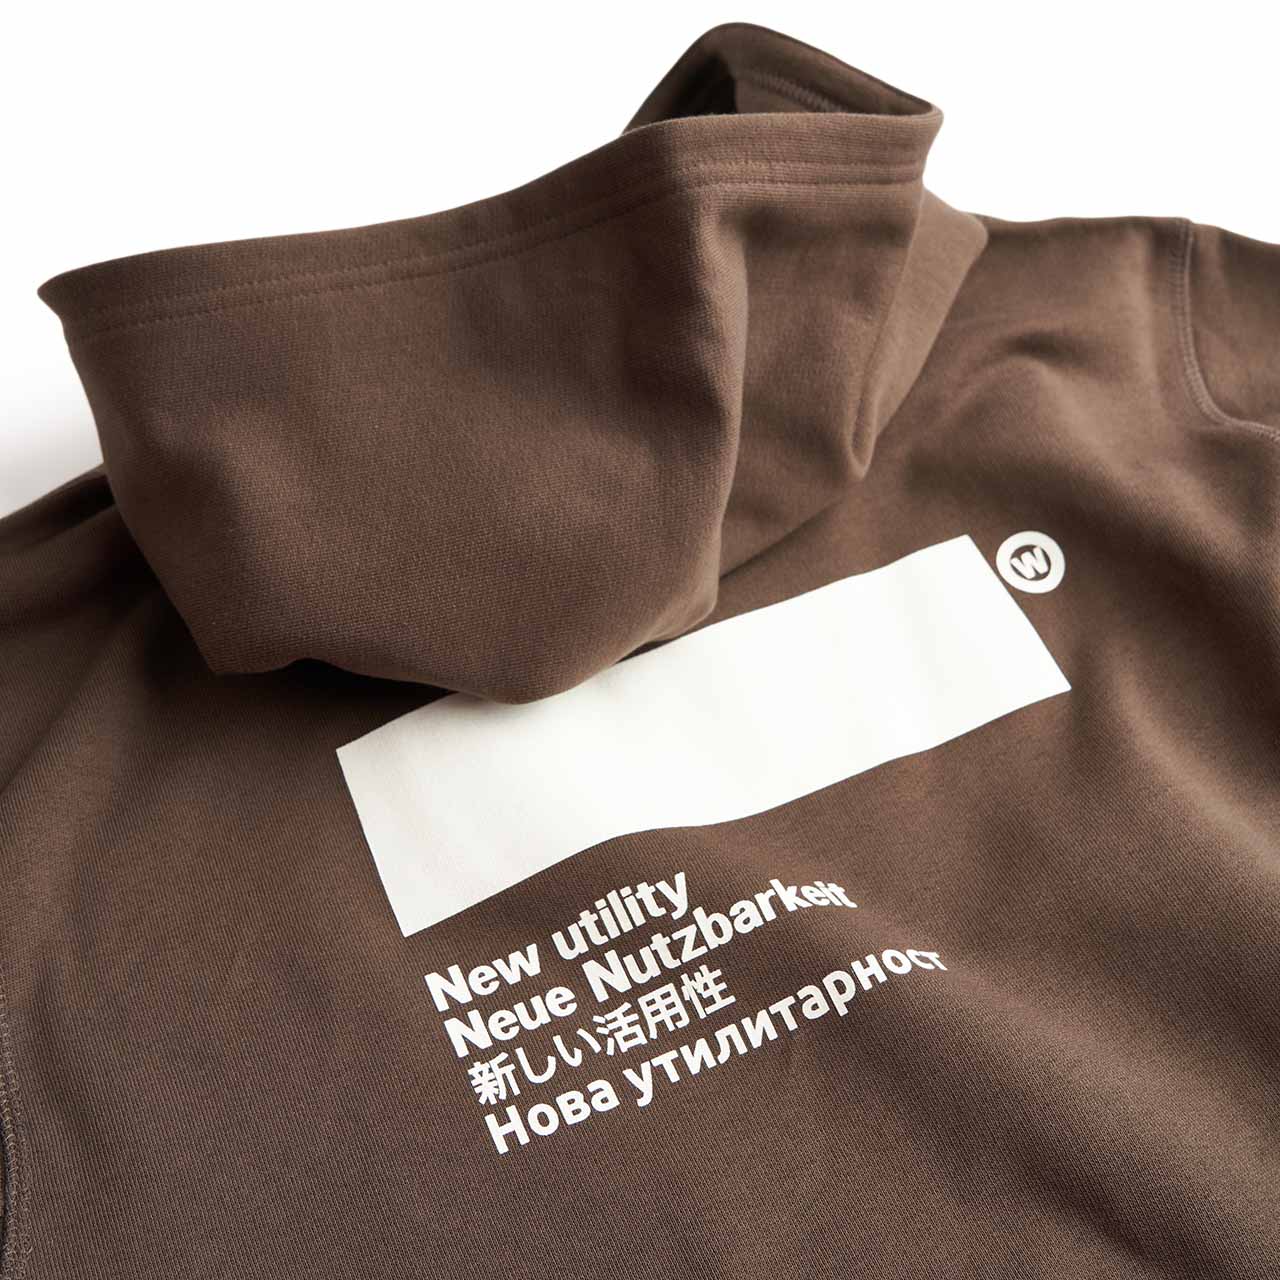 affxwrks standardised hoodie (brown)